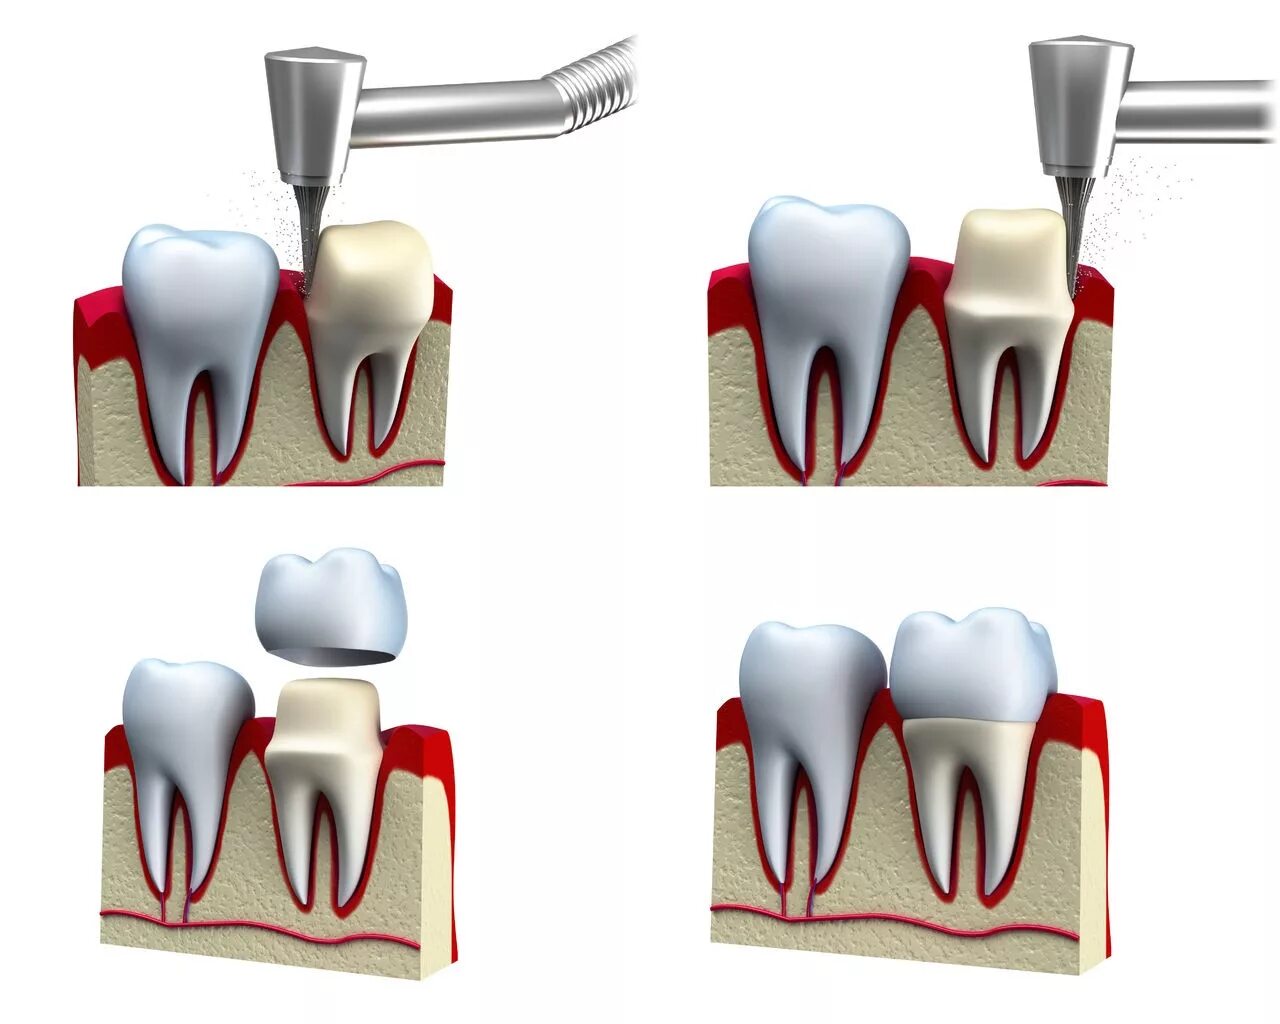 Микропротезы виниры вкладки стоматология. Металлокерамическая Штифтовая коронка. Депульпированный зуб на штифте. 3 зуба установить